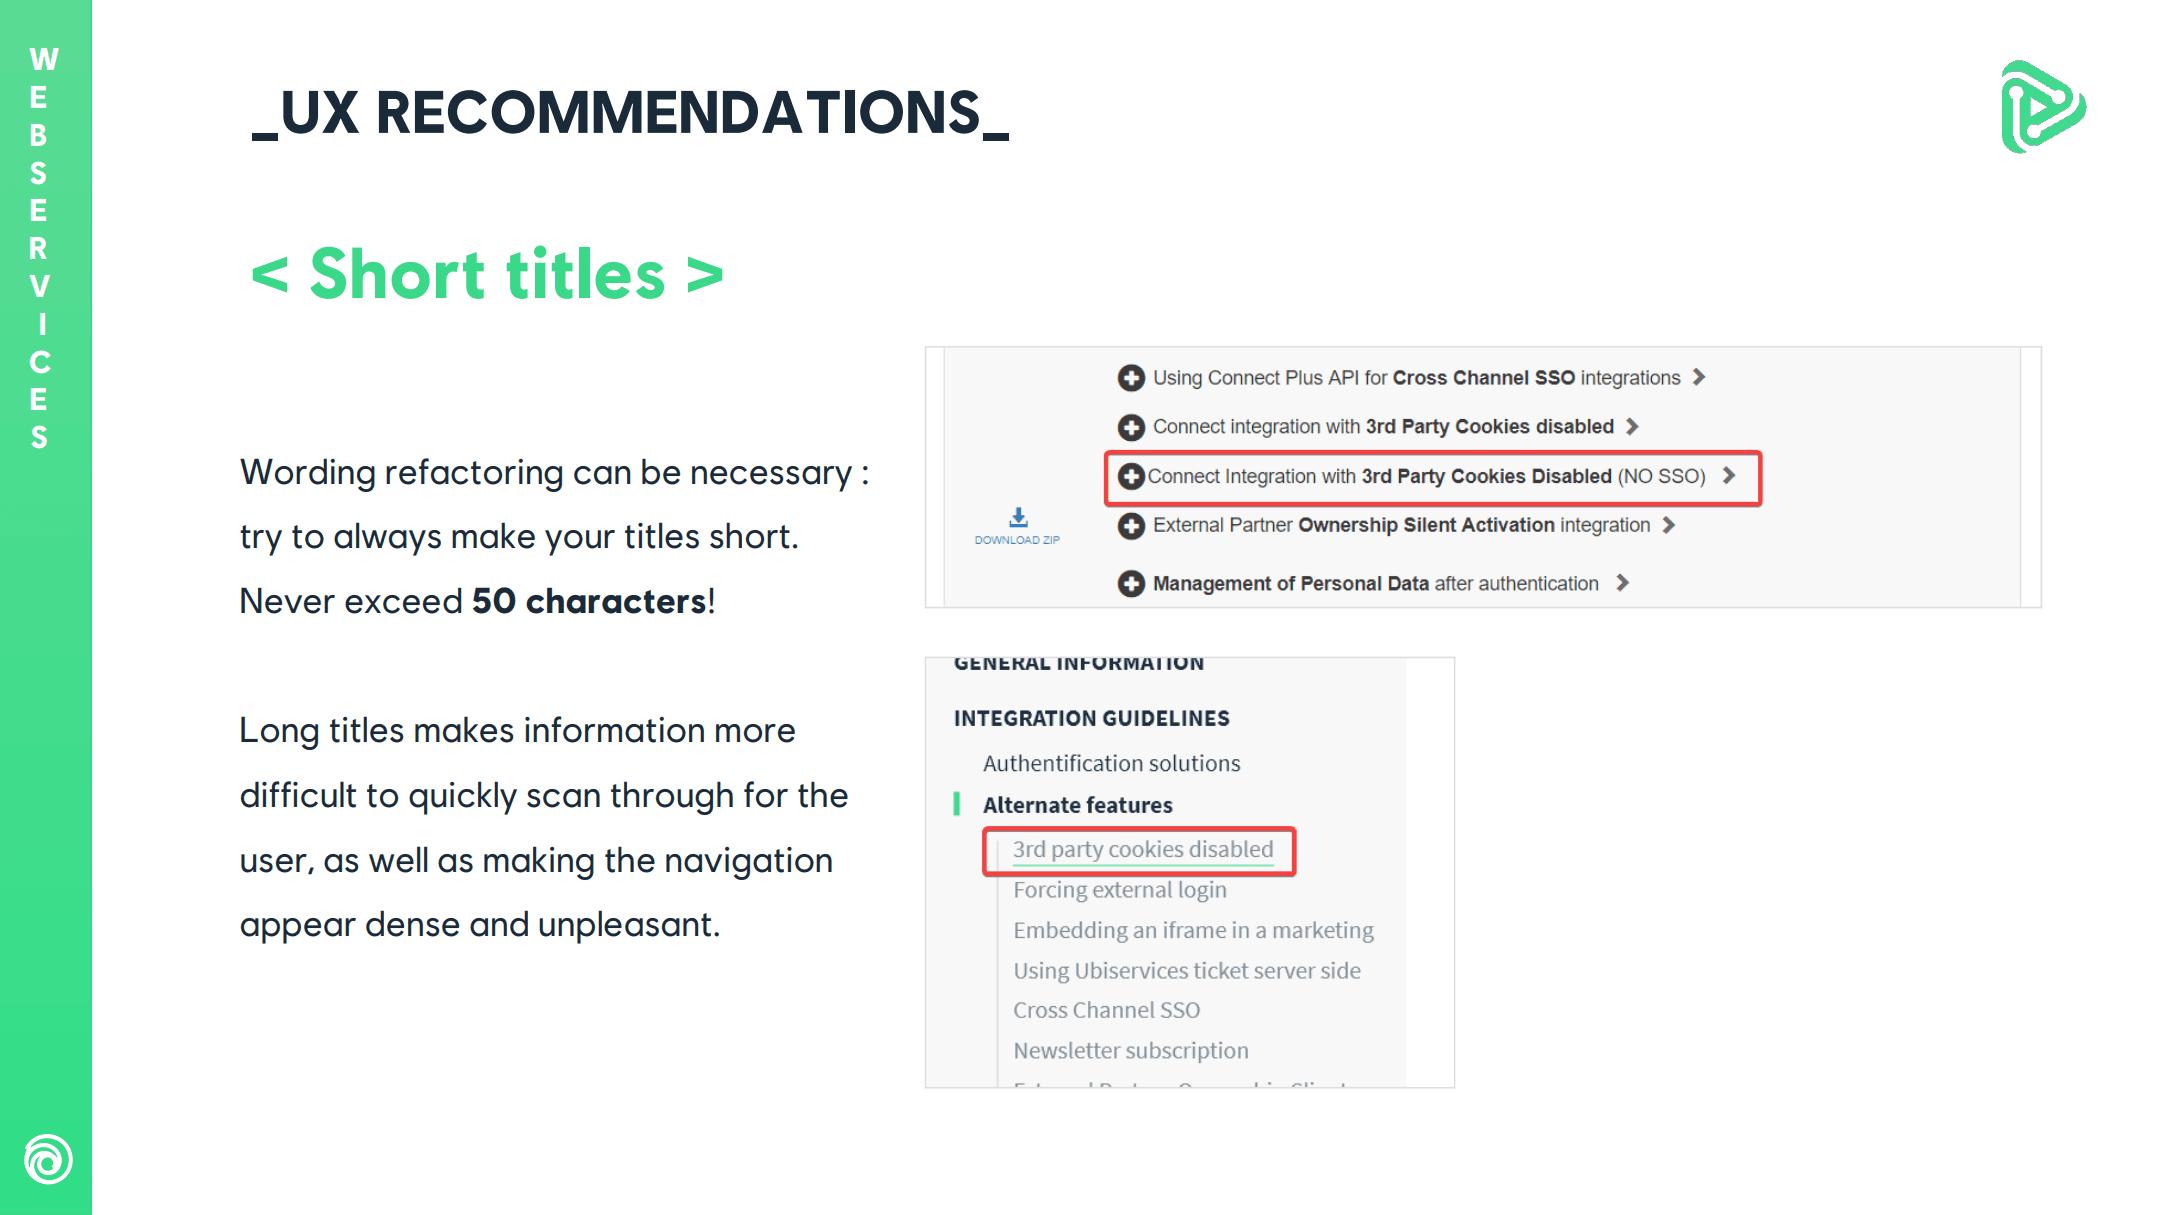 Ubisoft documentation titles